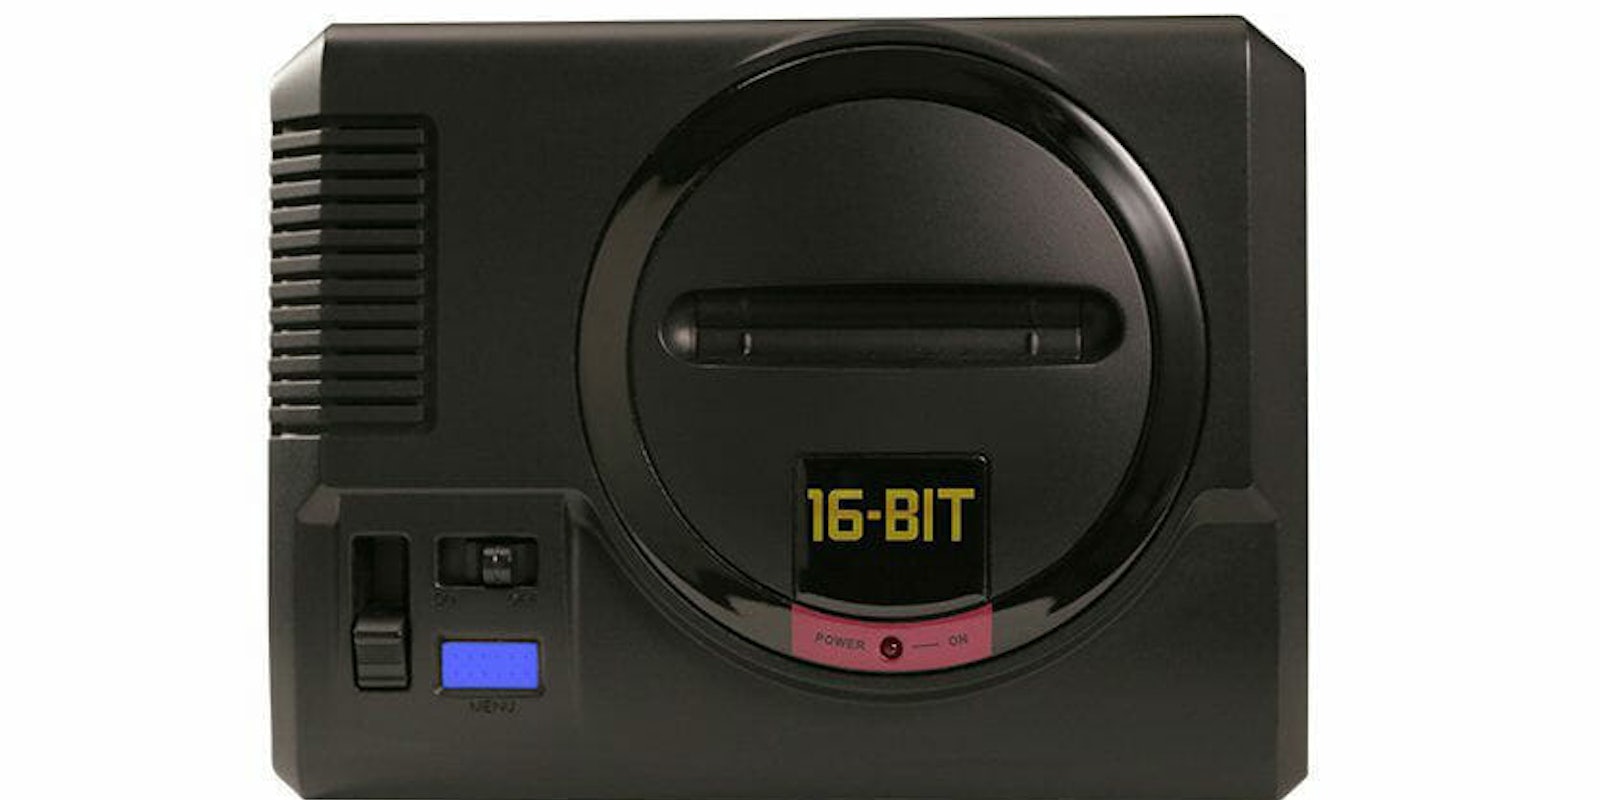 The Sega Genesis Mini